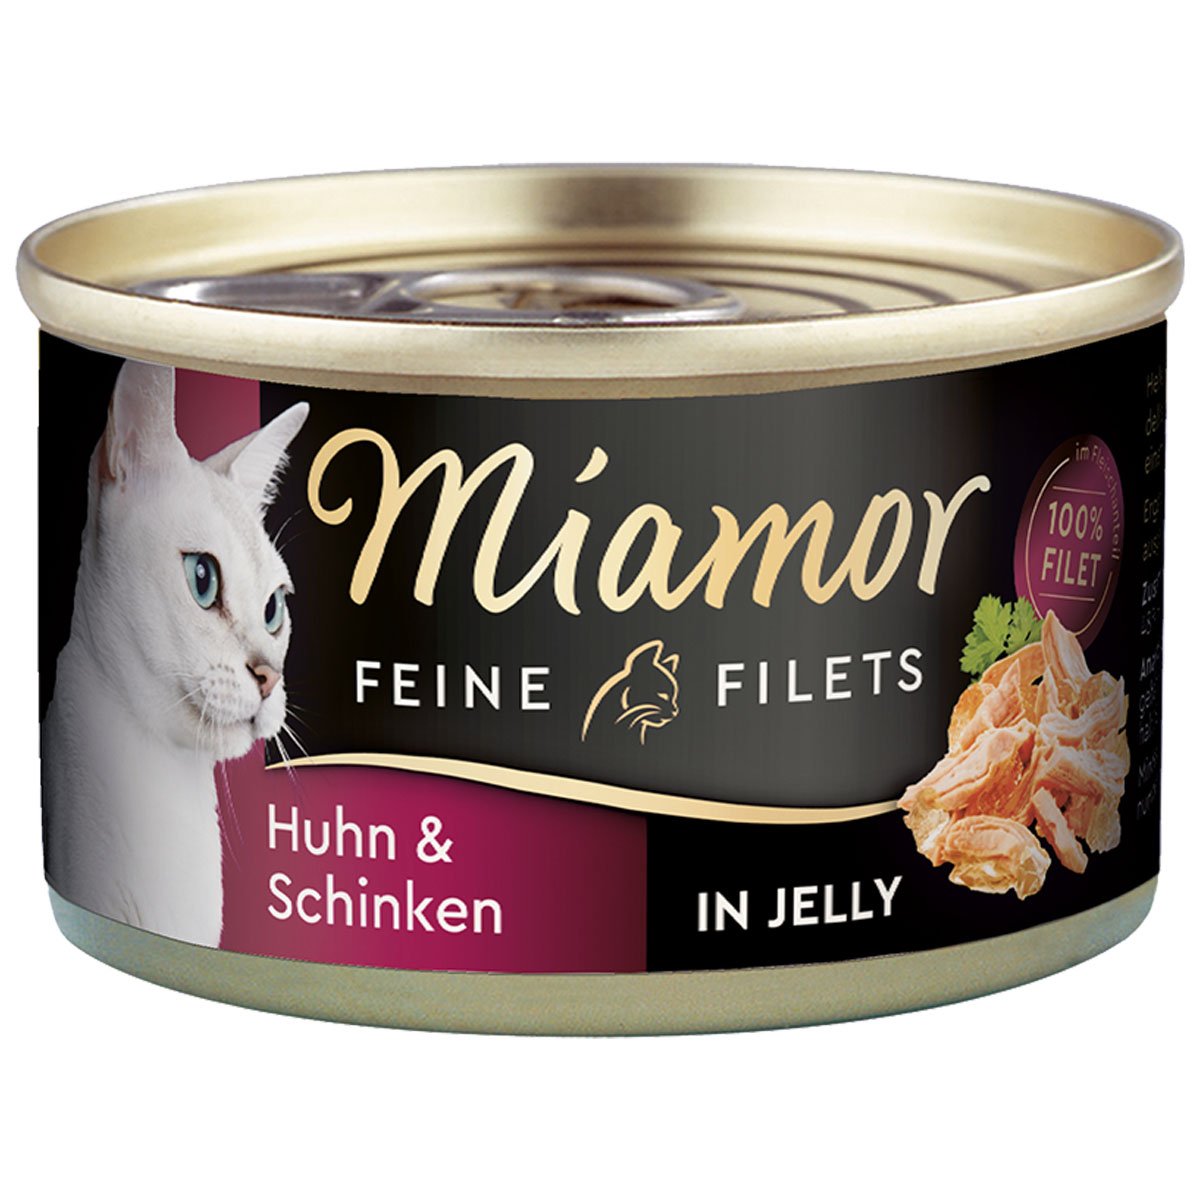 Miamor Feine Filets in Jelly Huhn und Schinken 100g Dose 24x100g